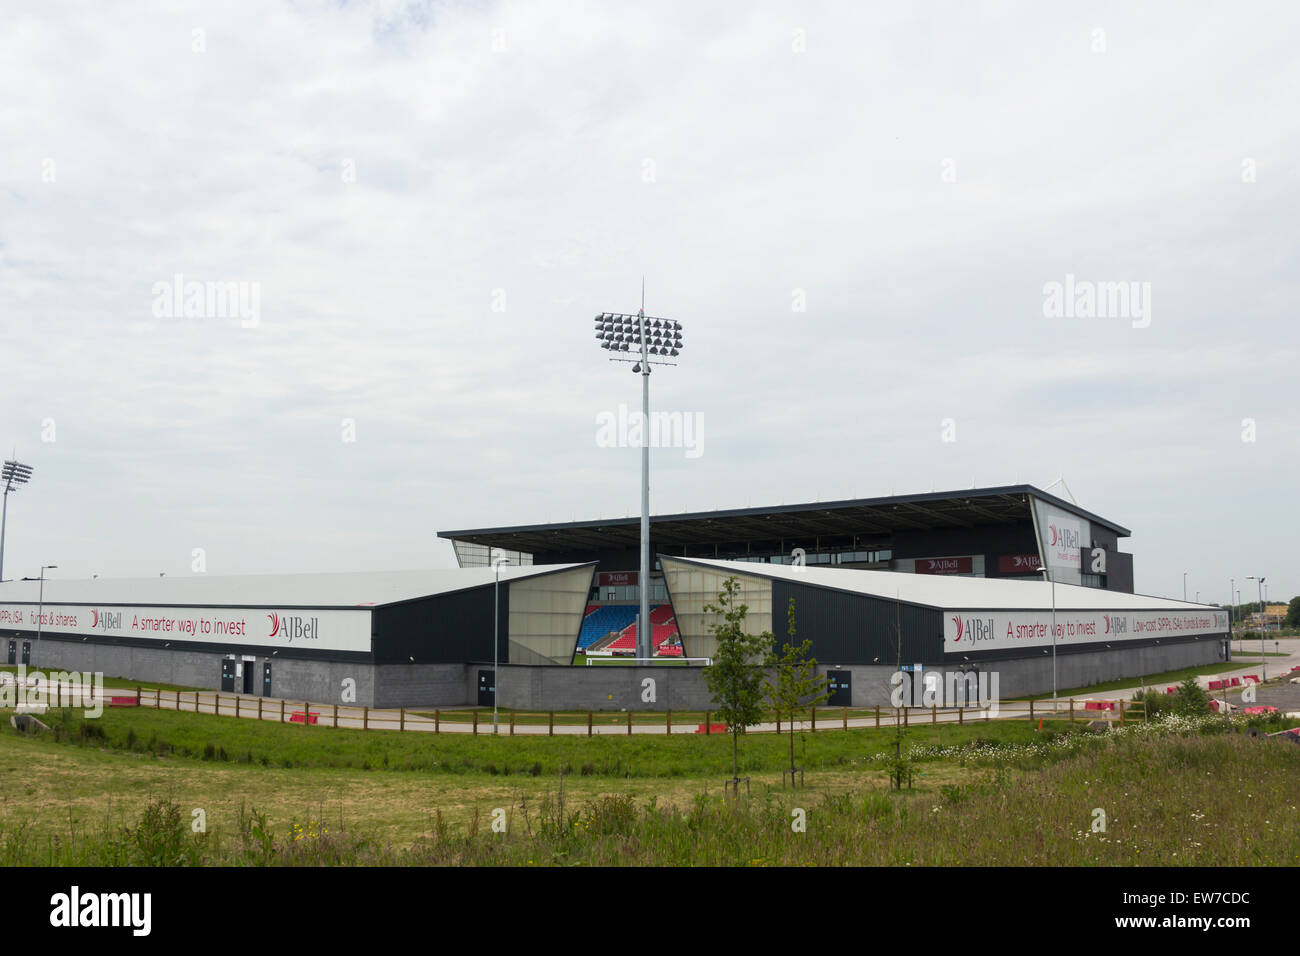 A sud-est di aspetto dell'AJ Bell stadium, Salford, precedentemente noto come il Salford City Stadium. Foto Stock